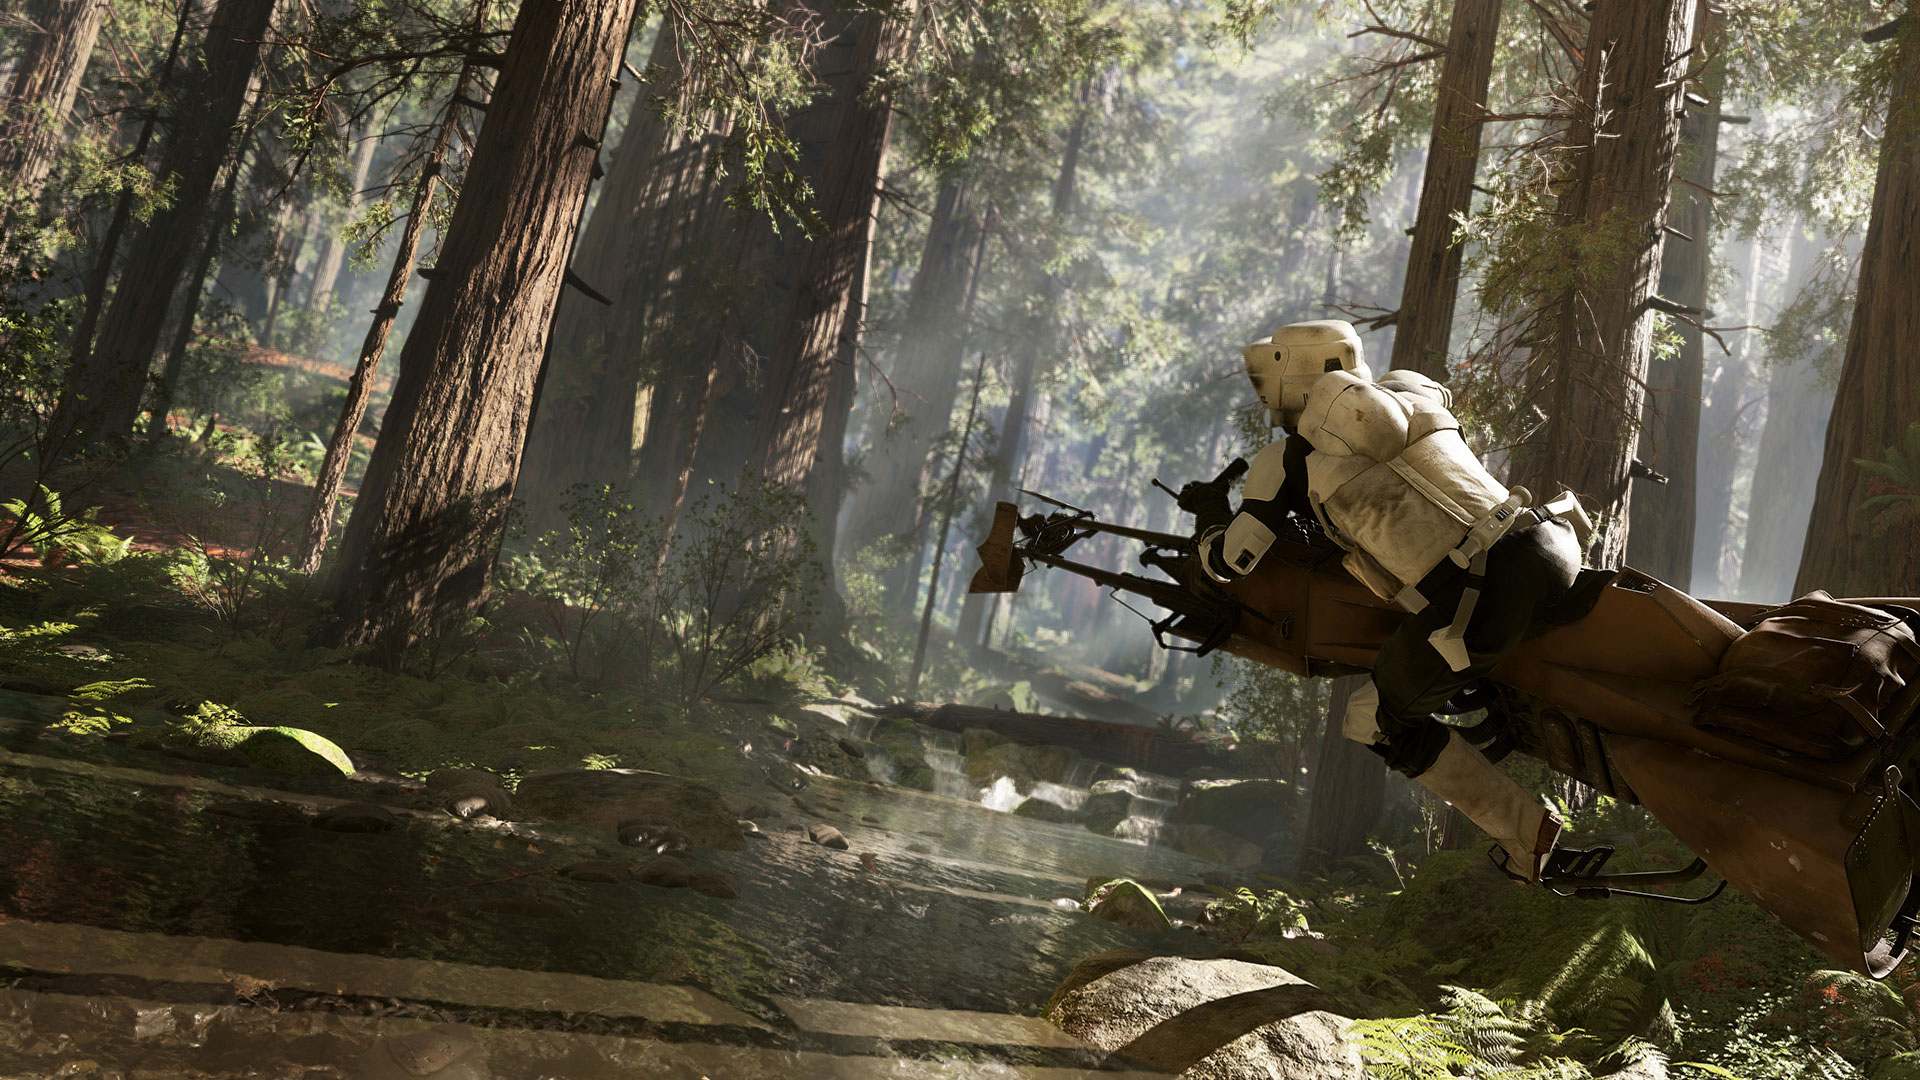 Stormtrooper riding a speeder bike in forest terrain.